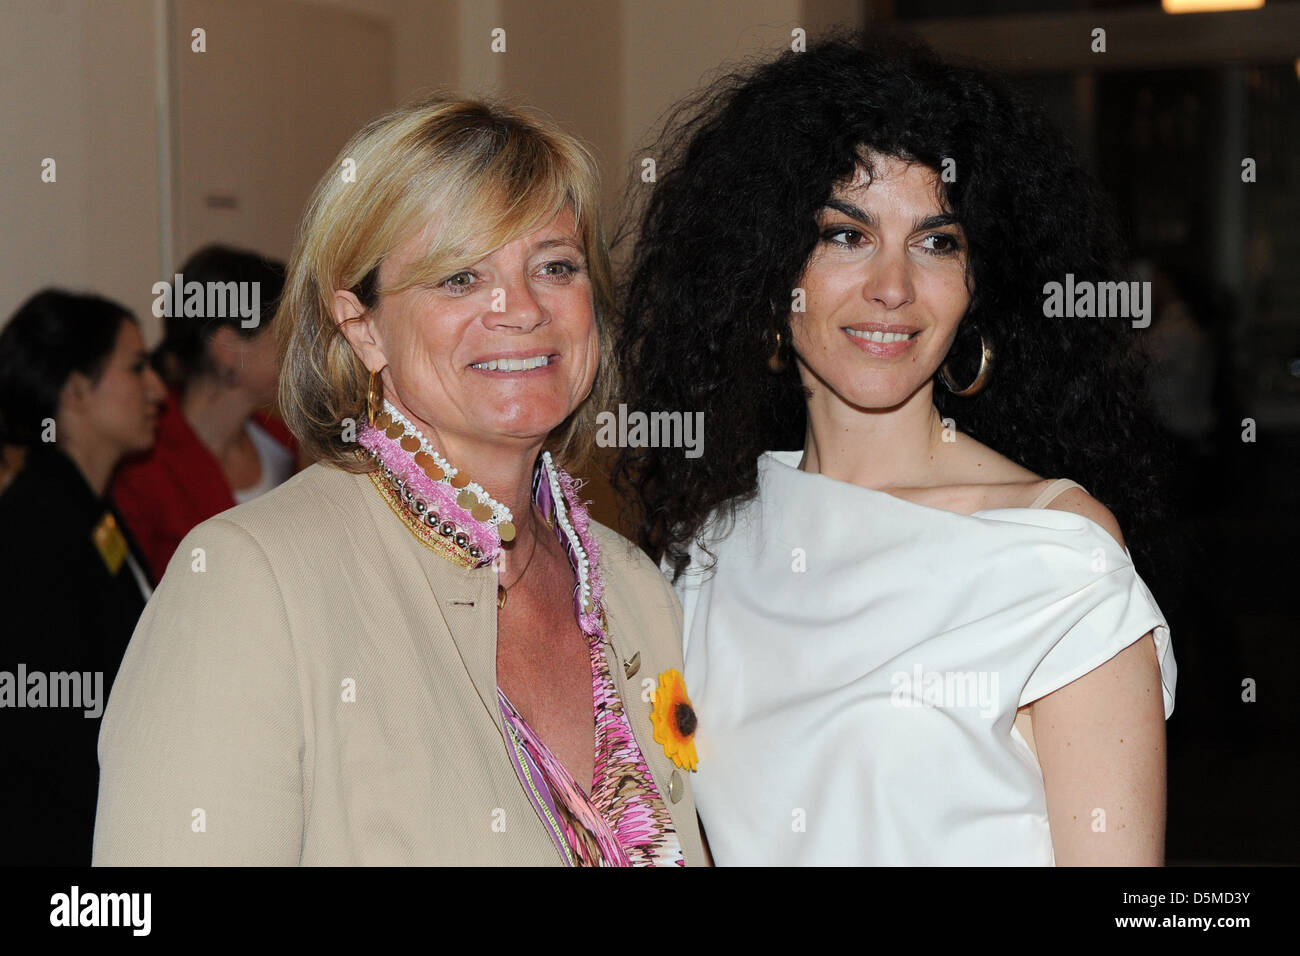 Claudia Rutt e Janine bianco al DKMS Ladies Pranzo presso Hotel Alliance. Berlino, Germania Foto Stock